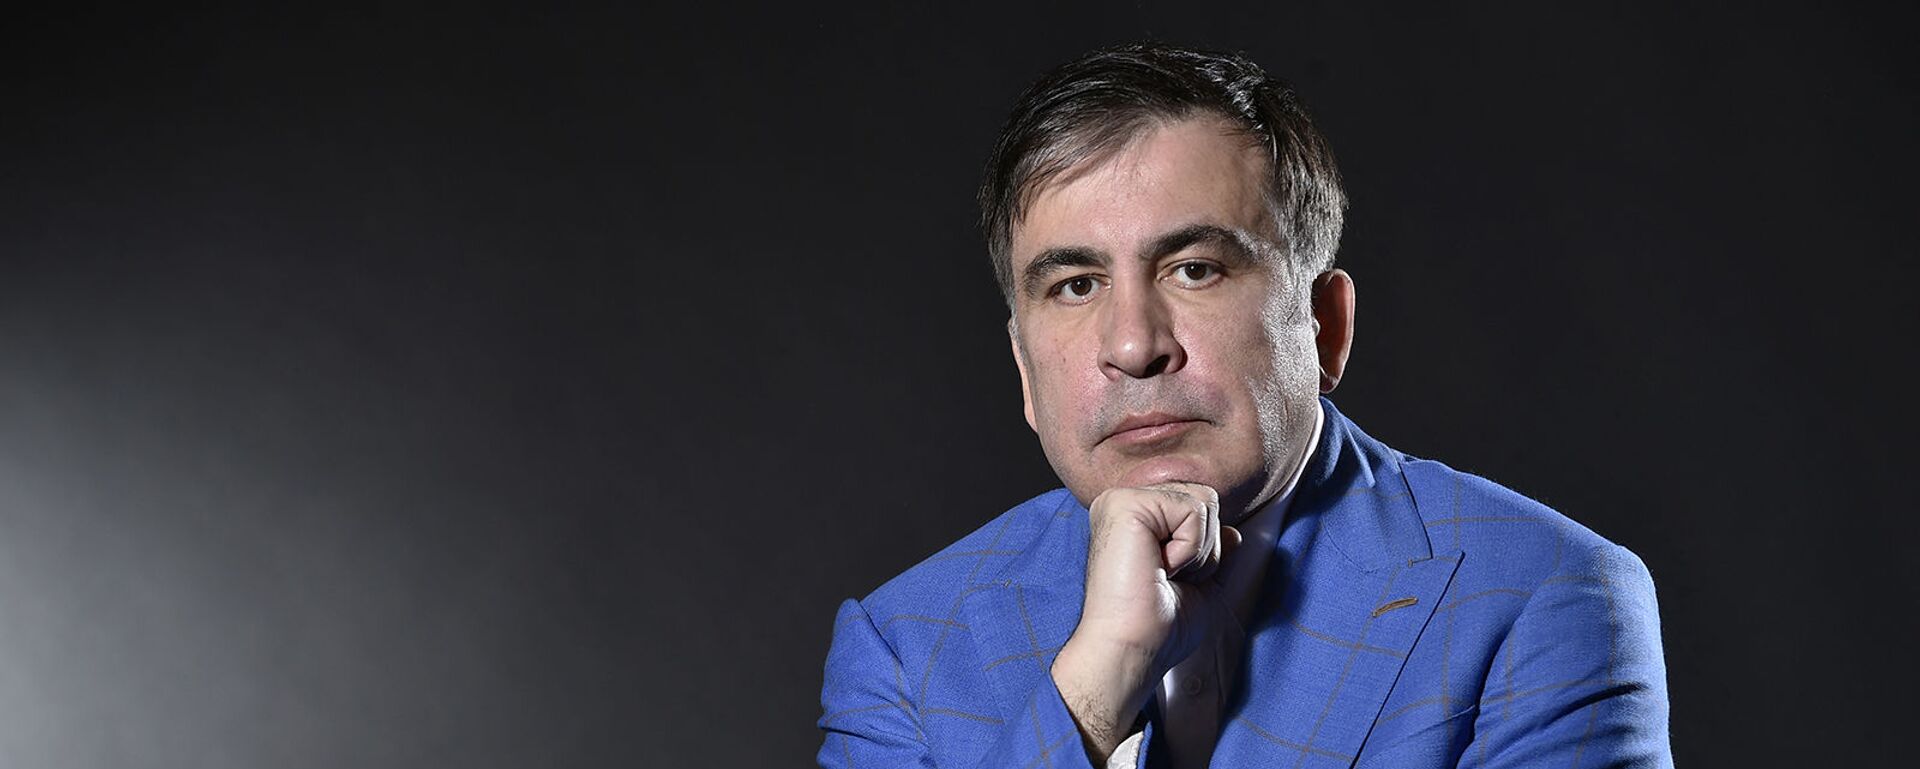 Бывший президент Грузии Михаил Саакашвили во время фотосессии (7 марта 2018). Амстердам - Sputnik Армения, 1920, 08.10.2021